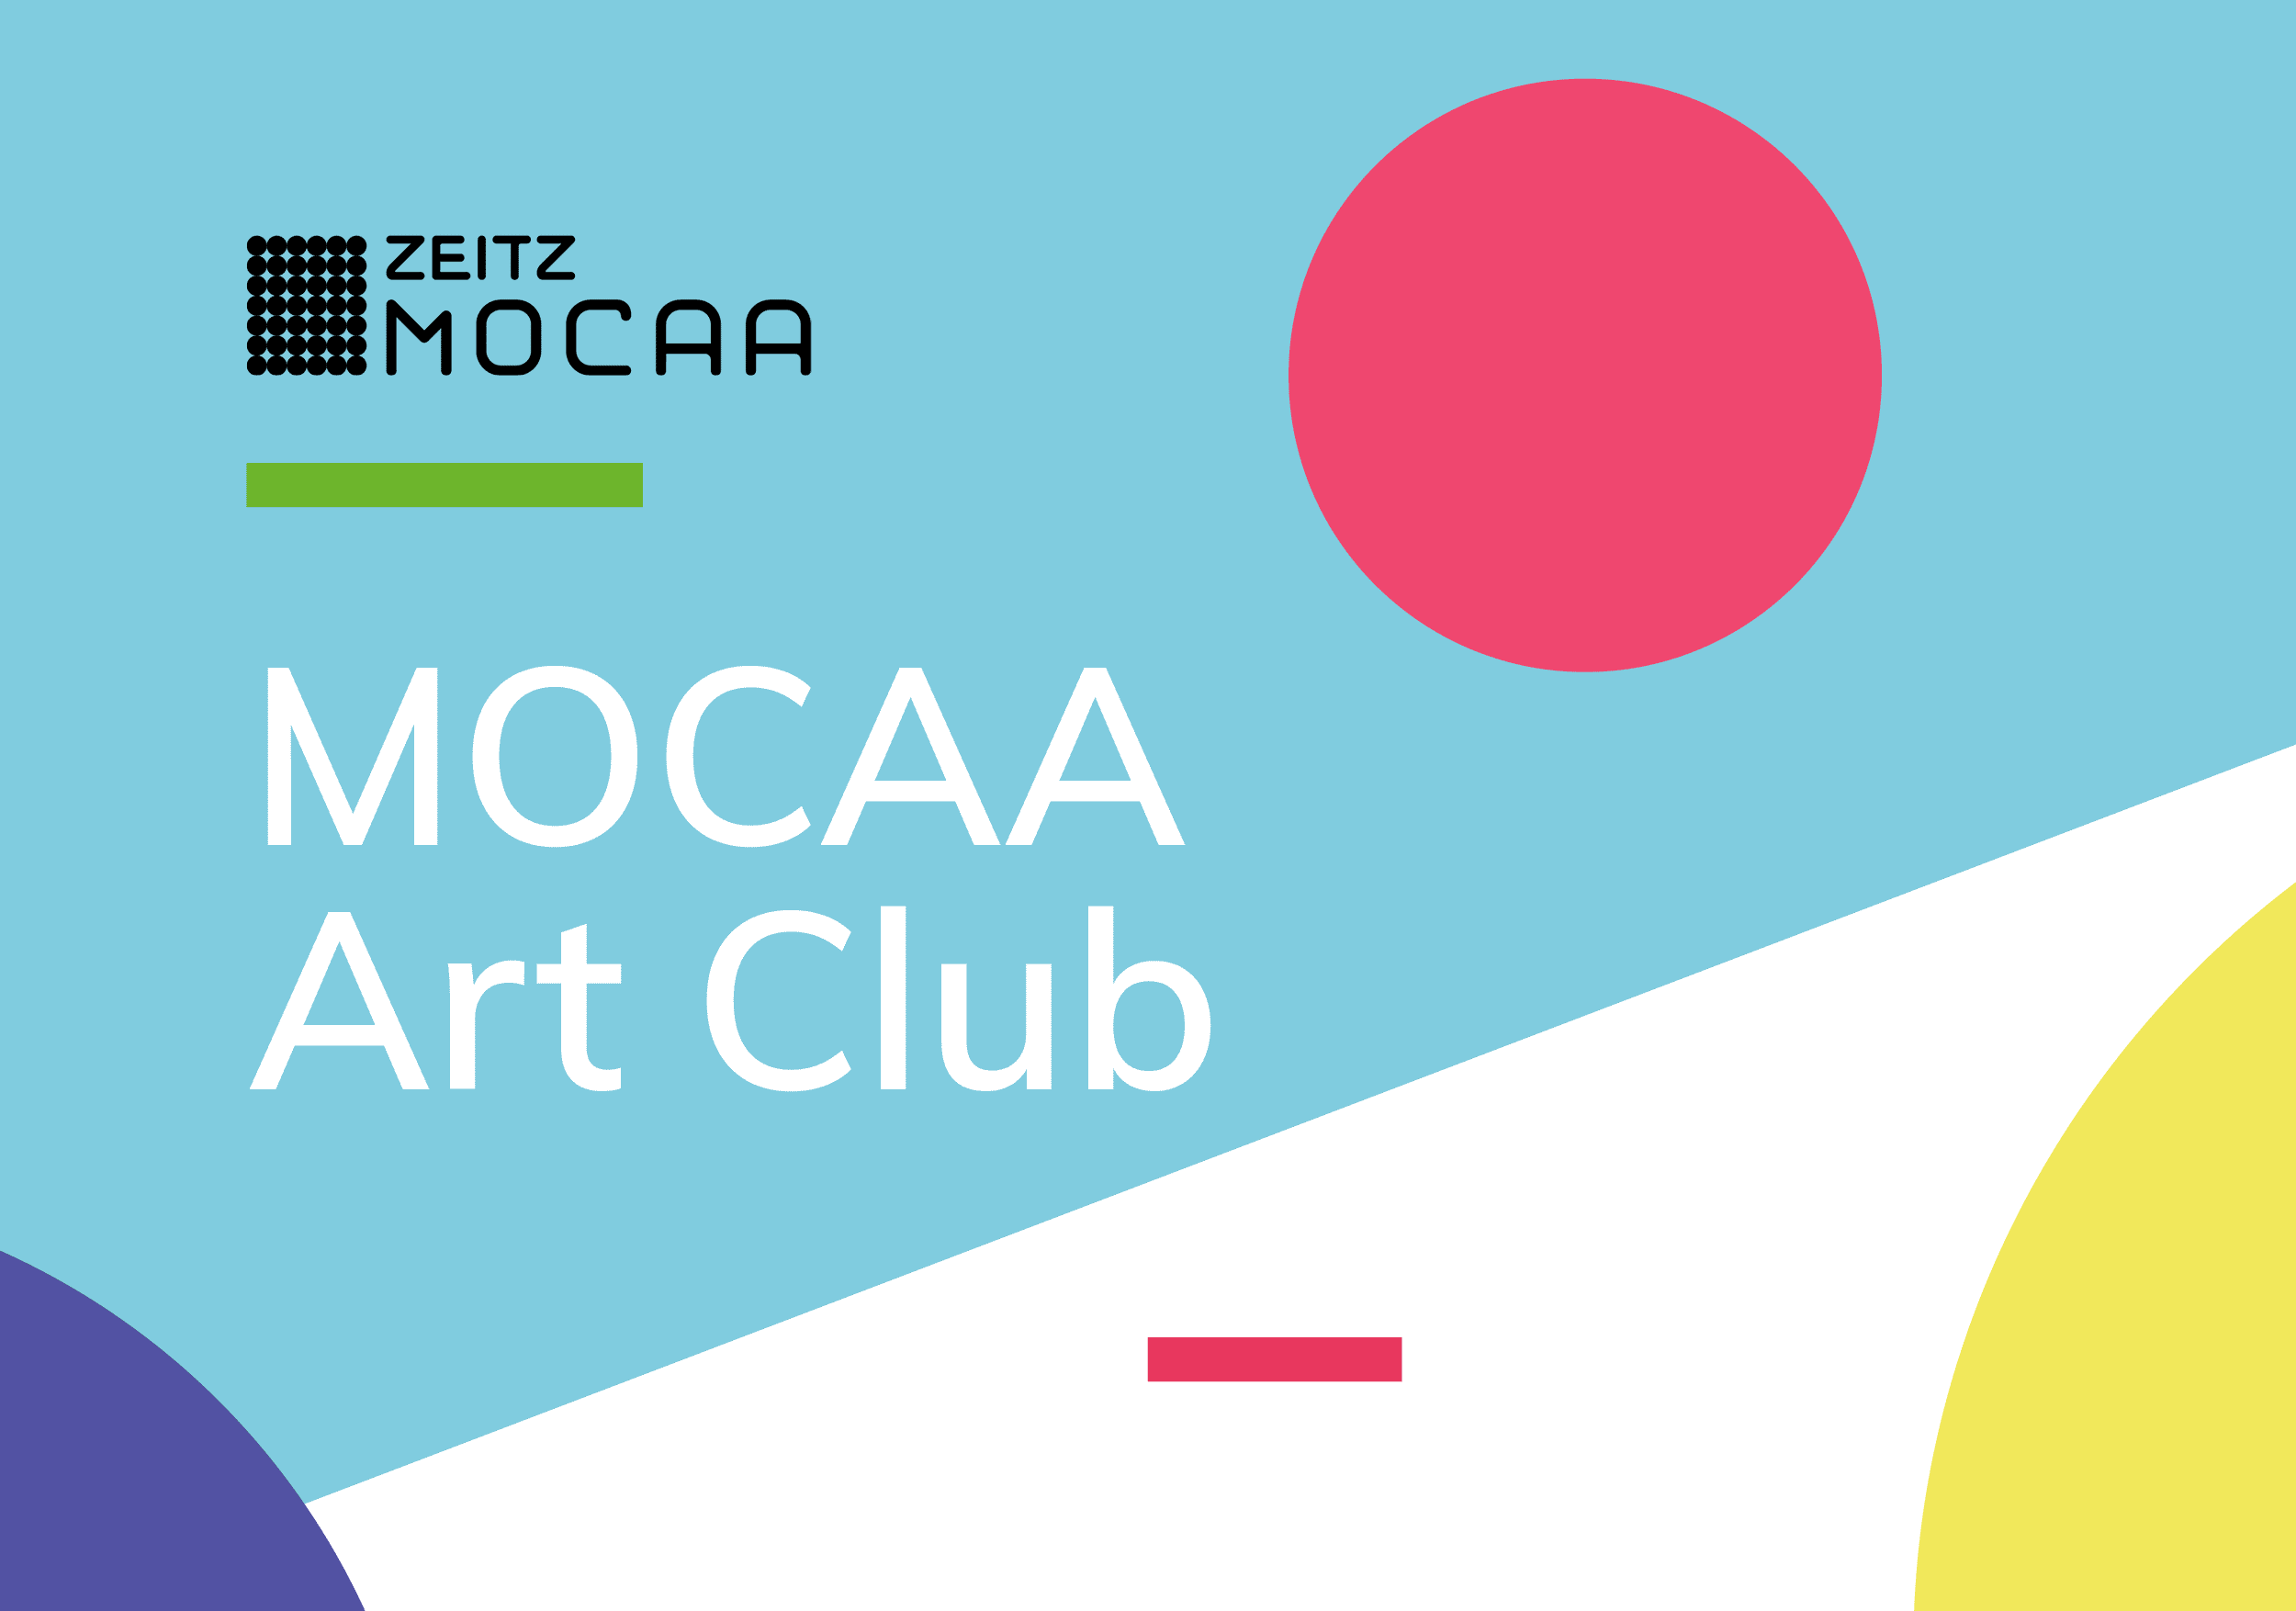 MOCAA Art Club (M A C)